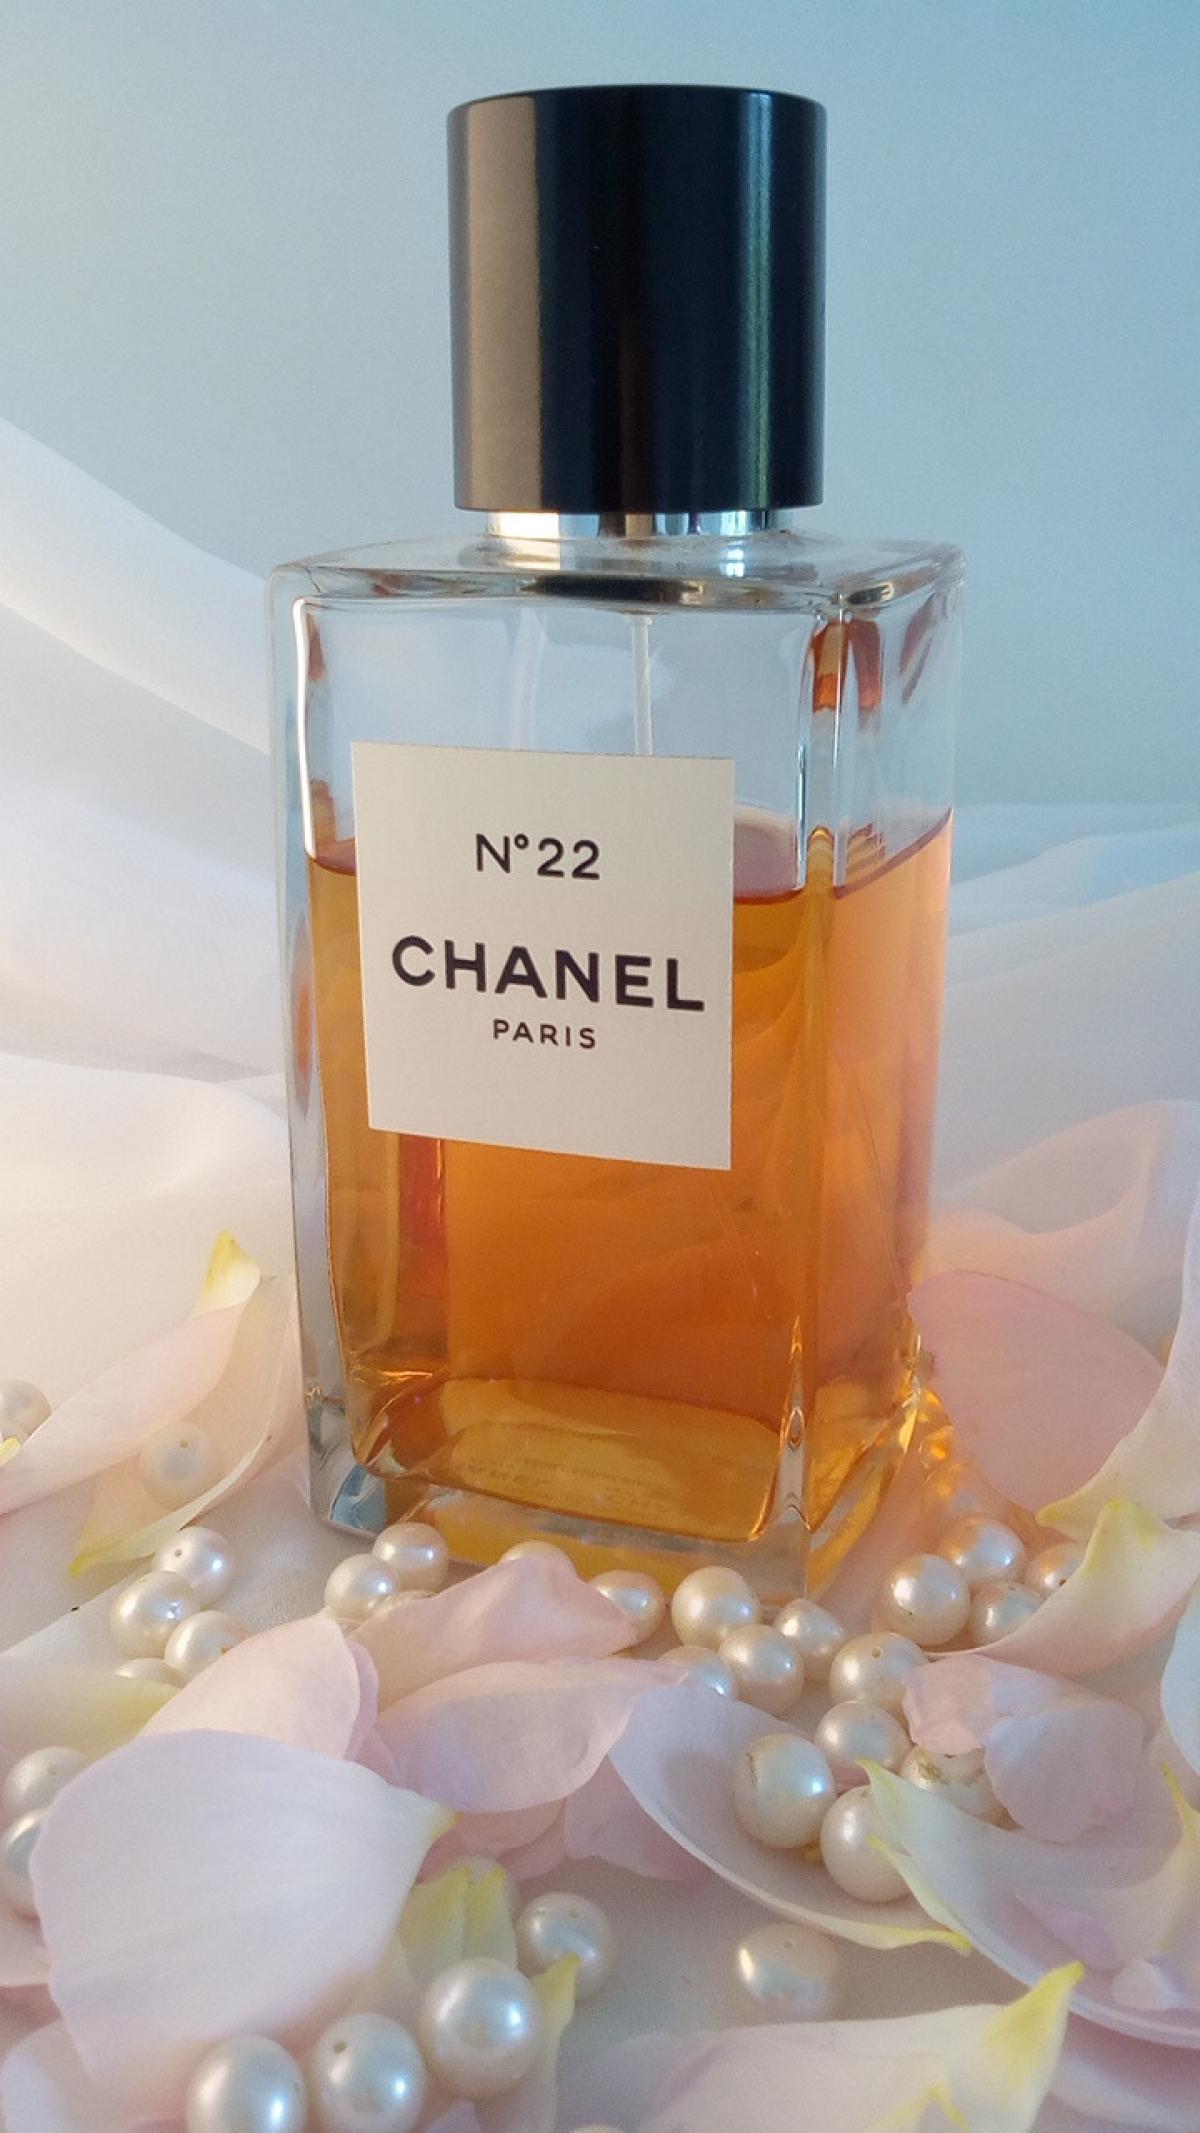 Les Exclusifs de Chanel No 22 Chanel Parfum - ein es Parfum für Frauen 1922